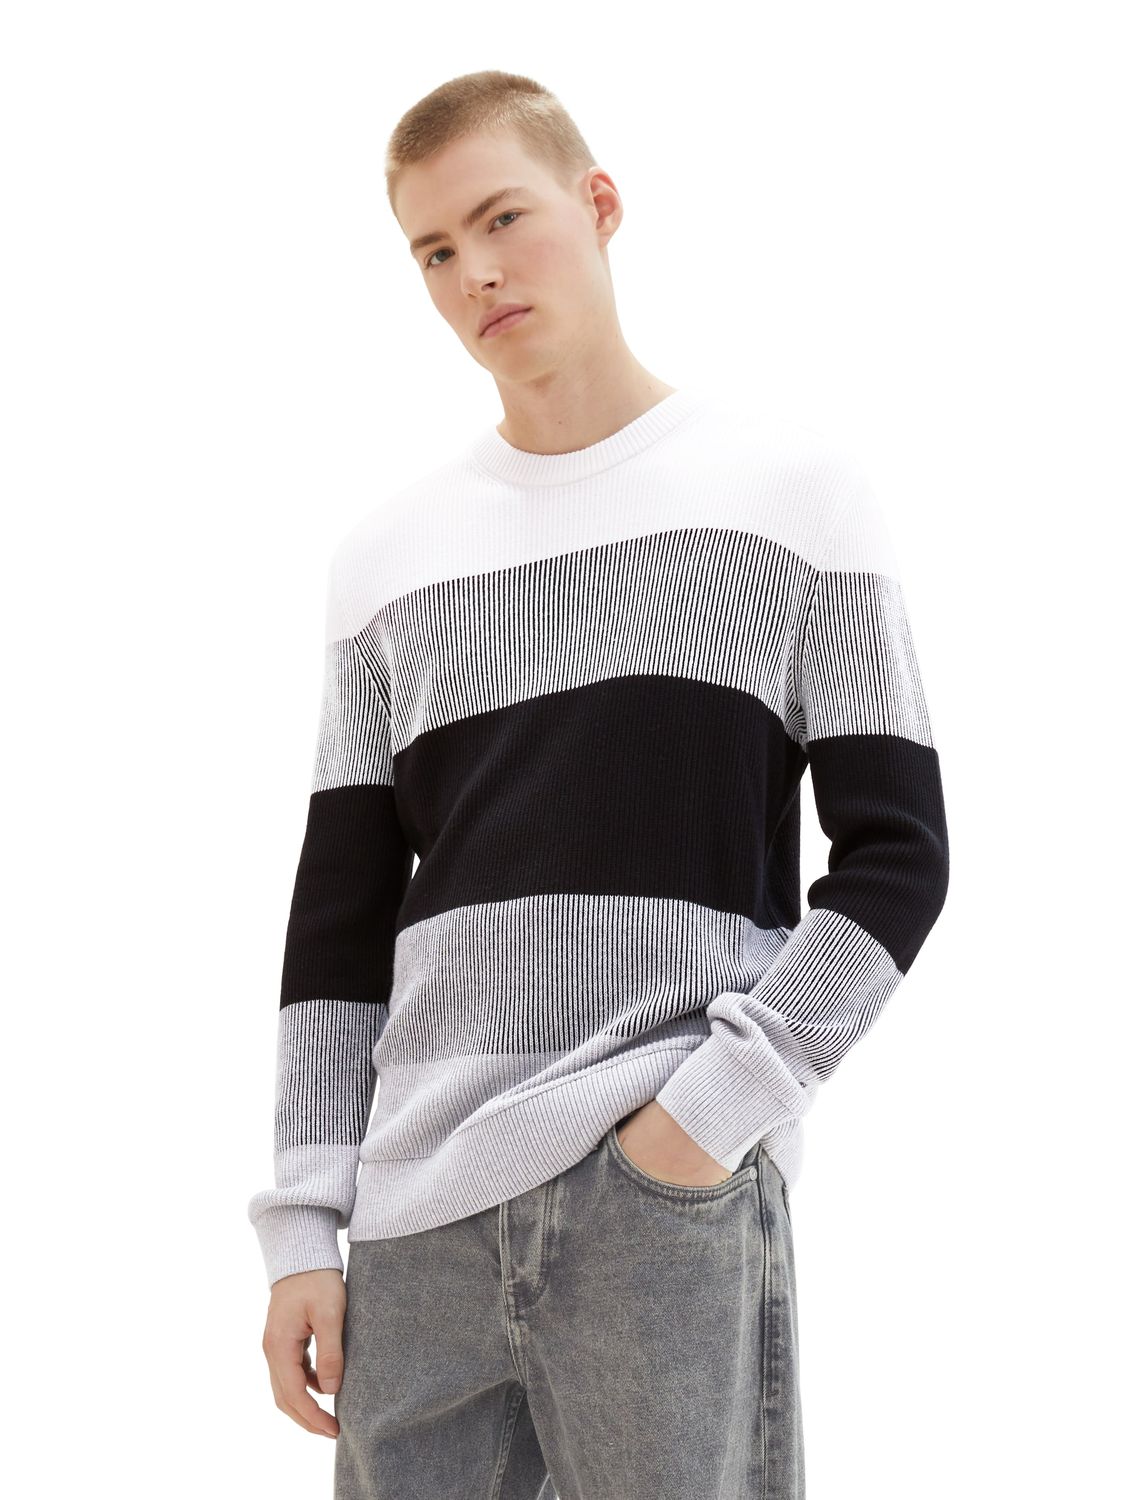 Пуловер TOM TAILOR Denim STRUCTURED COLORBLOCK, разноцветный пуловер tom tailor denim structured doublelayer бежевый